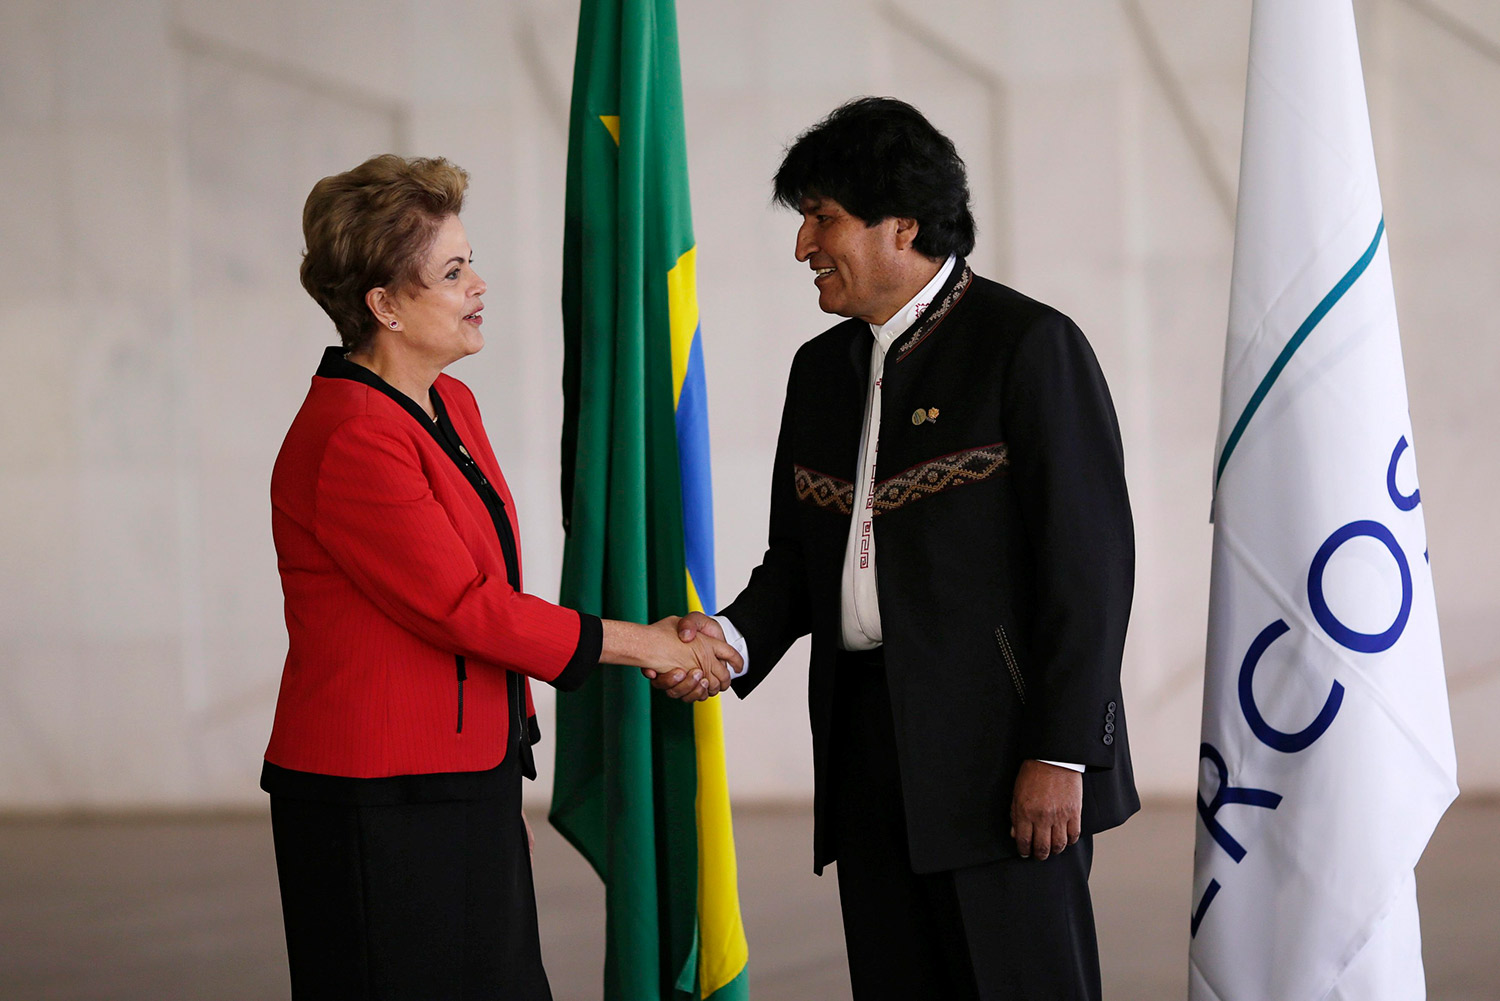 Cancilleres firman en Brasil adhesión de Bolivia como miembro pleno del Mercosur